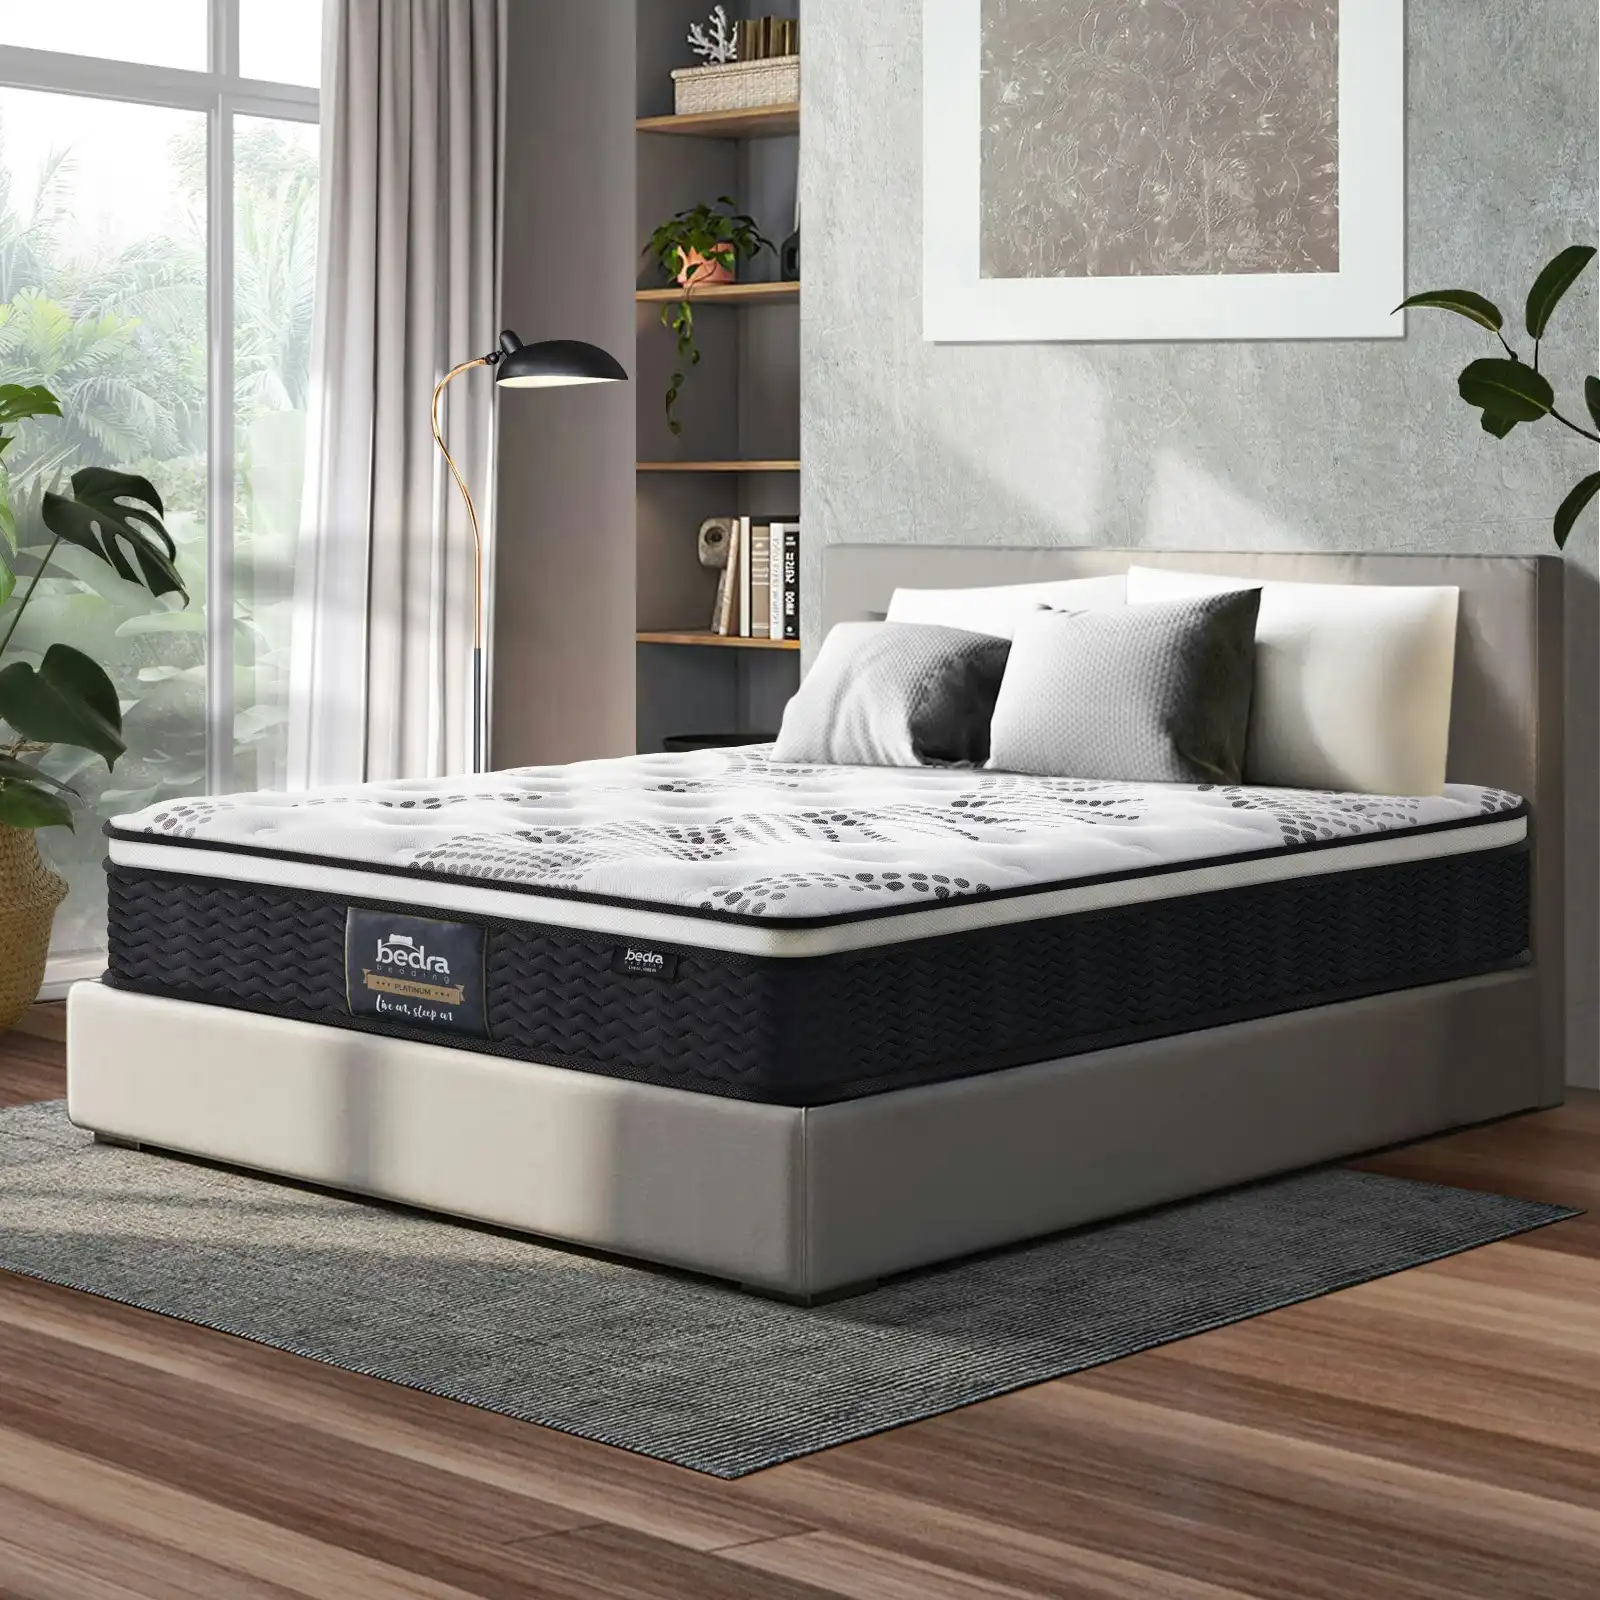 Bedra King Mattress Cool Gel Foam Euro Top Bed Pocket Spring Medium Firm 22cm